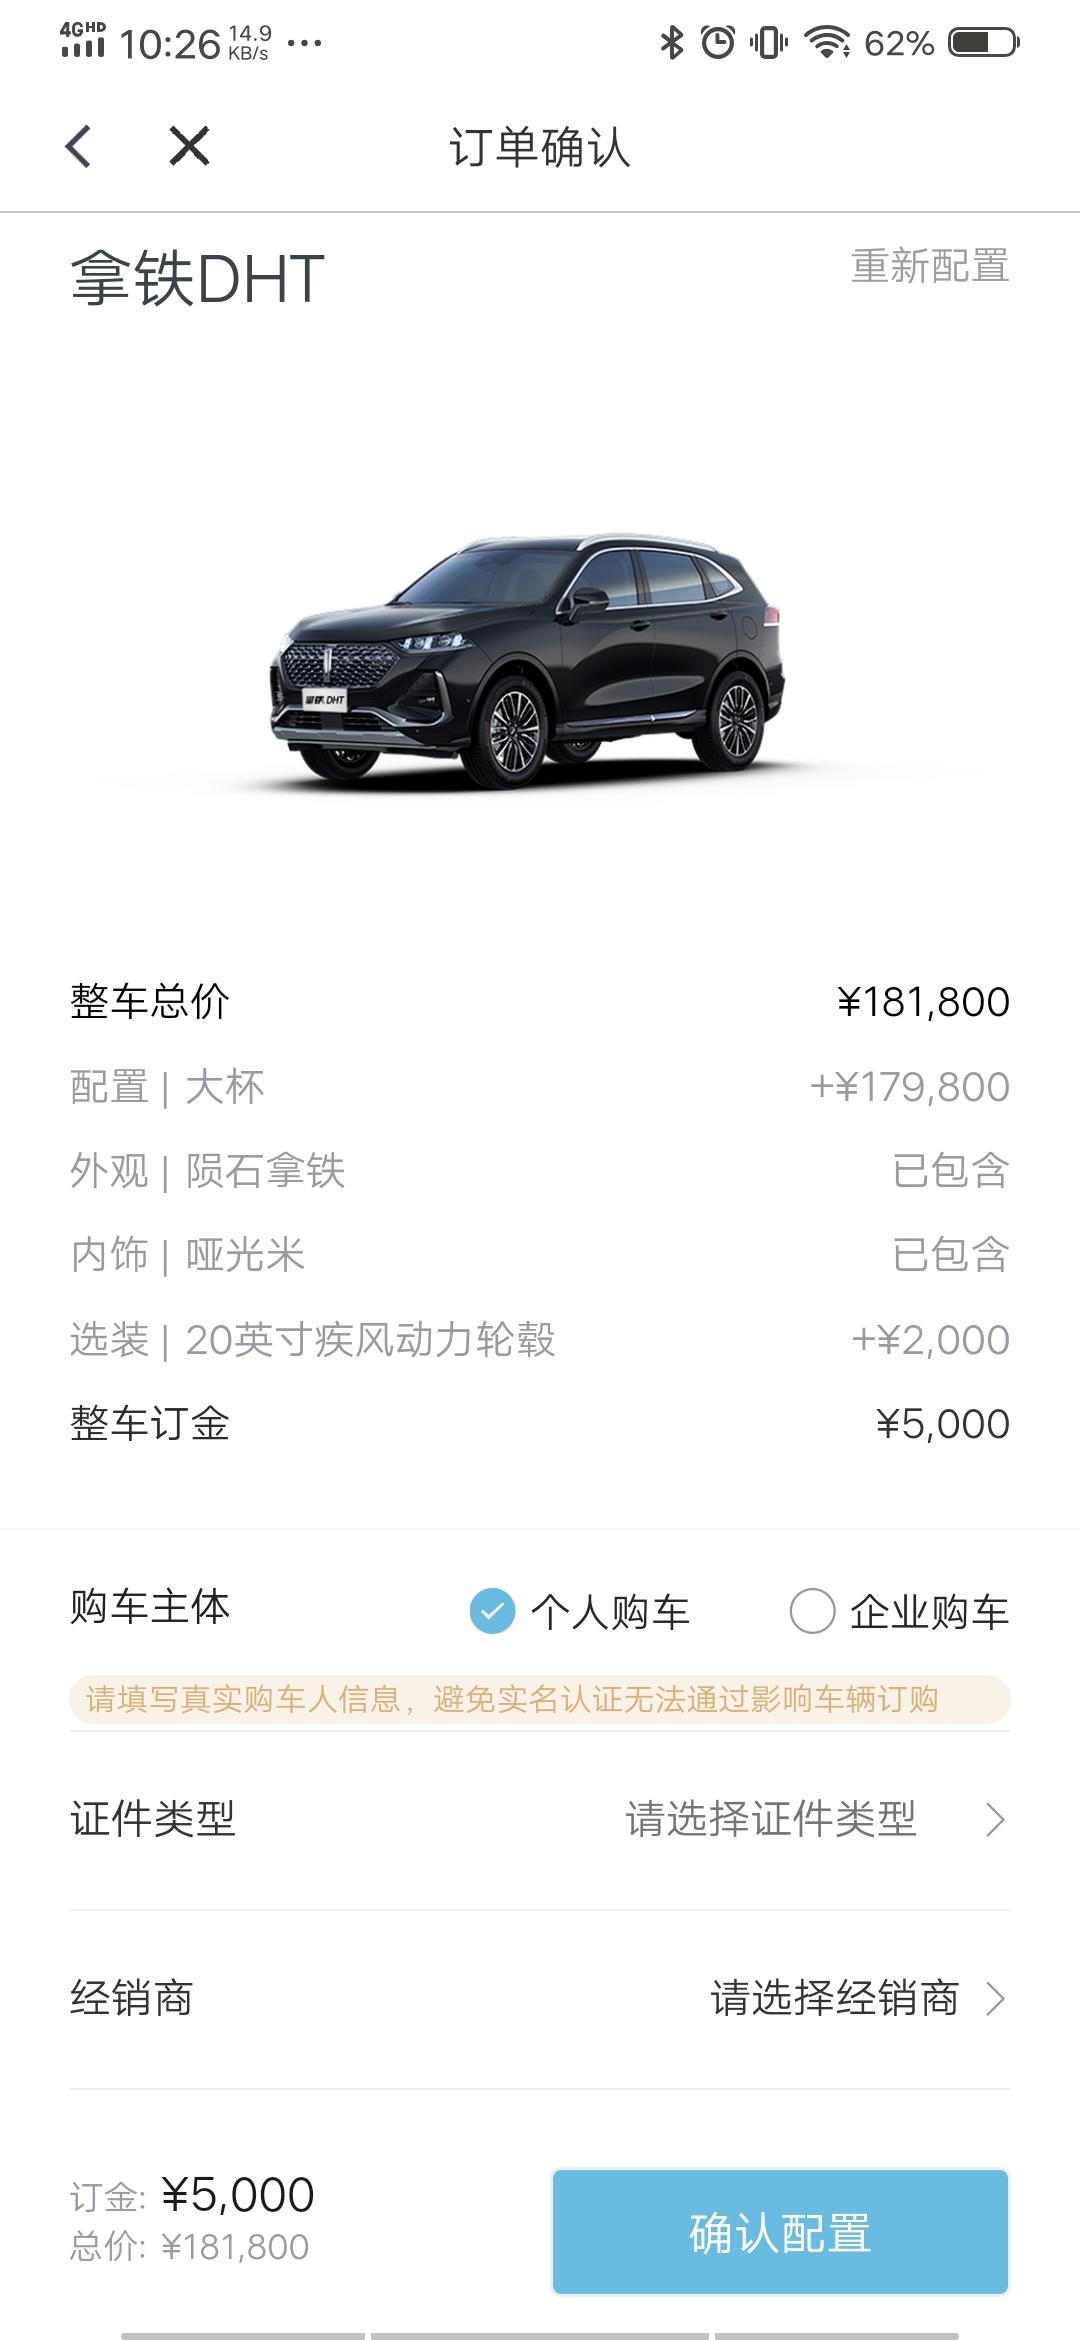 魏牌拿铁DHT 请问在app顶新车 最后那个价格就是落地价吗